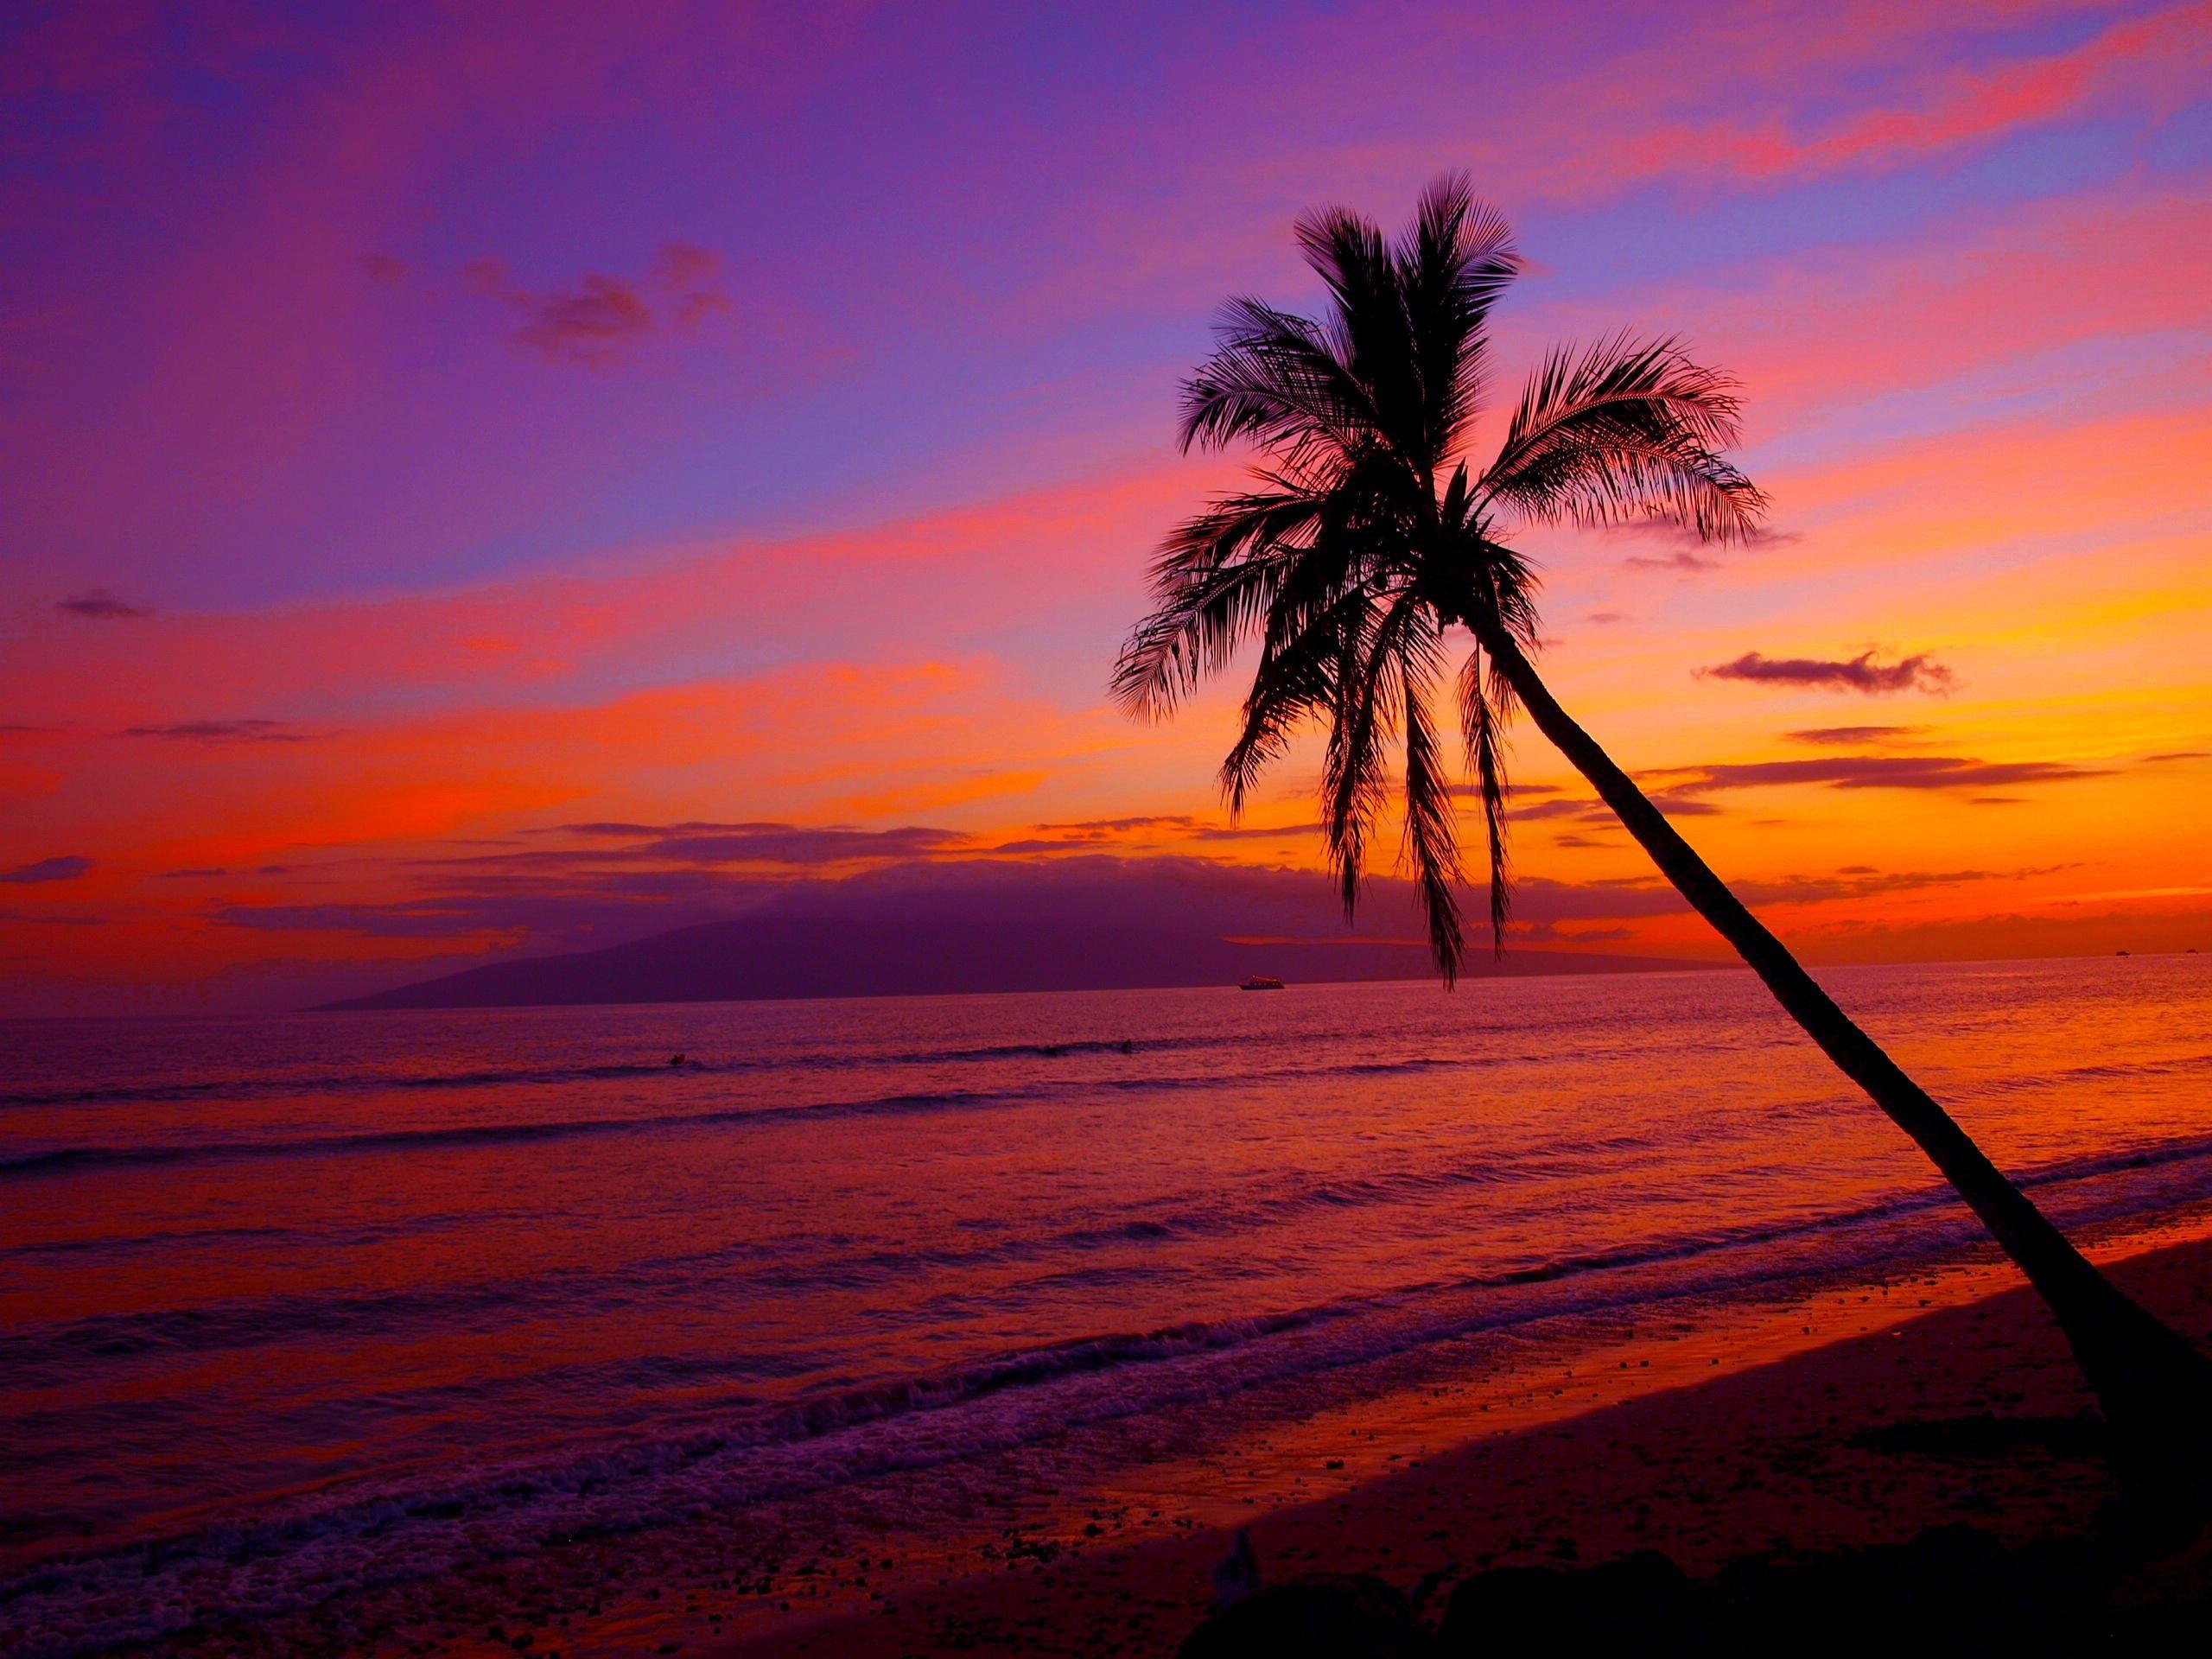 Hawaii Sunset Wallpaper Desktop. Sunset beach hawaii, Sunset